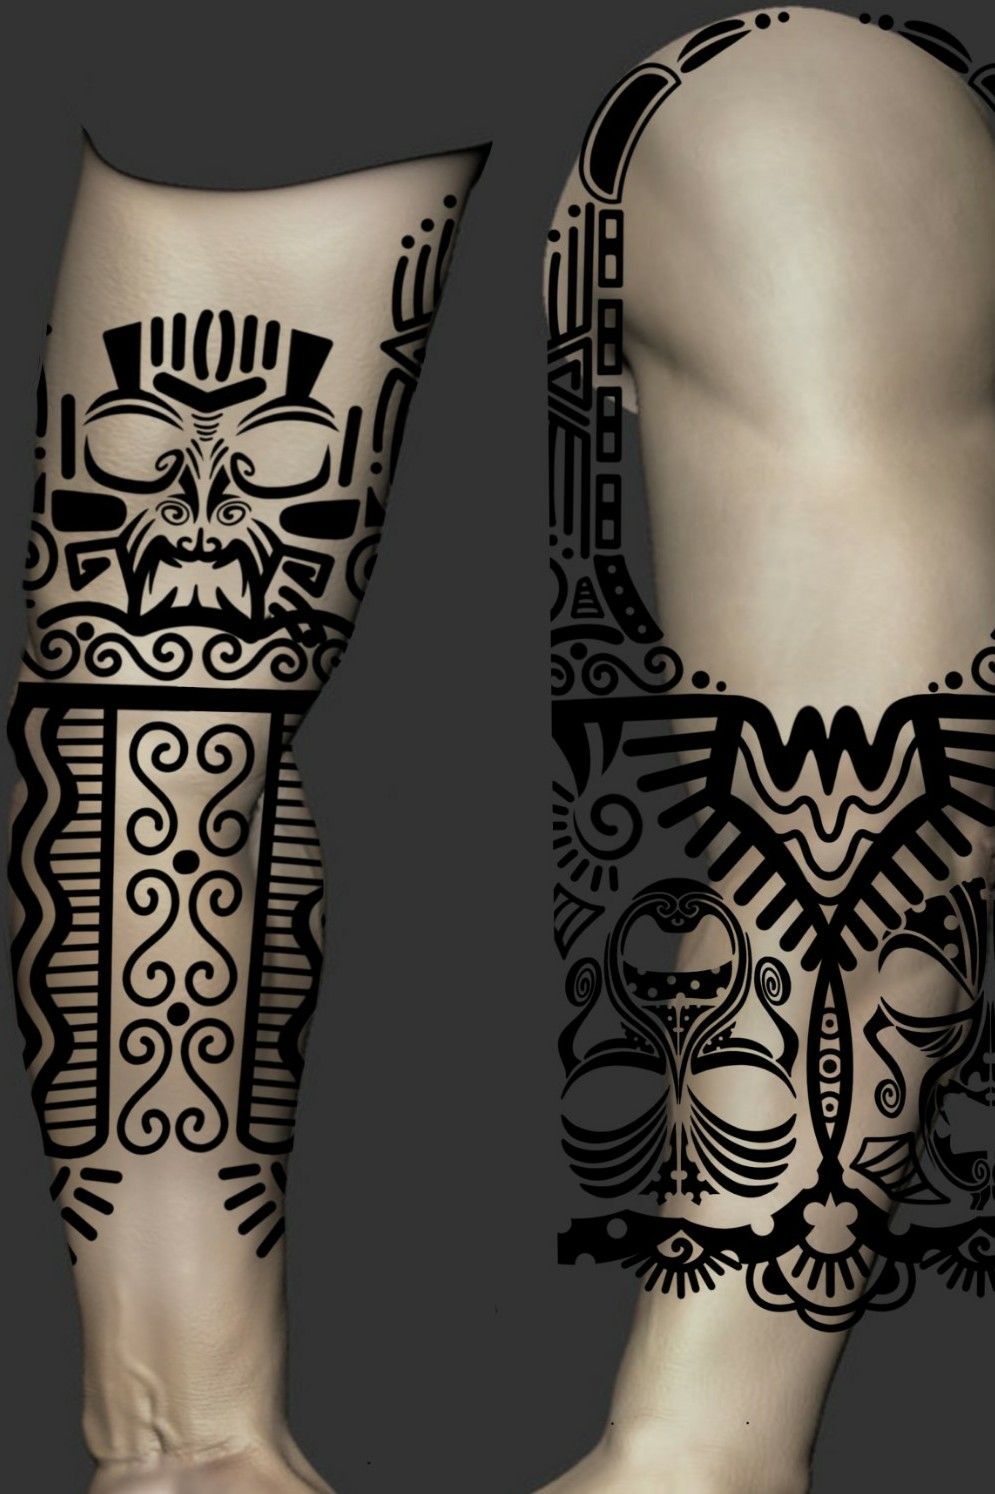 28 El Salvador tattoo ideas  el salvador salvador el salvador art